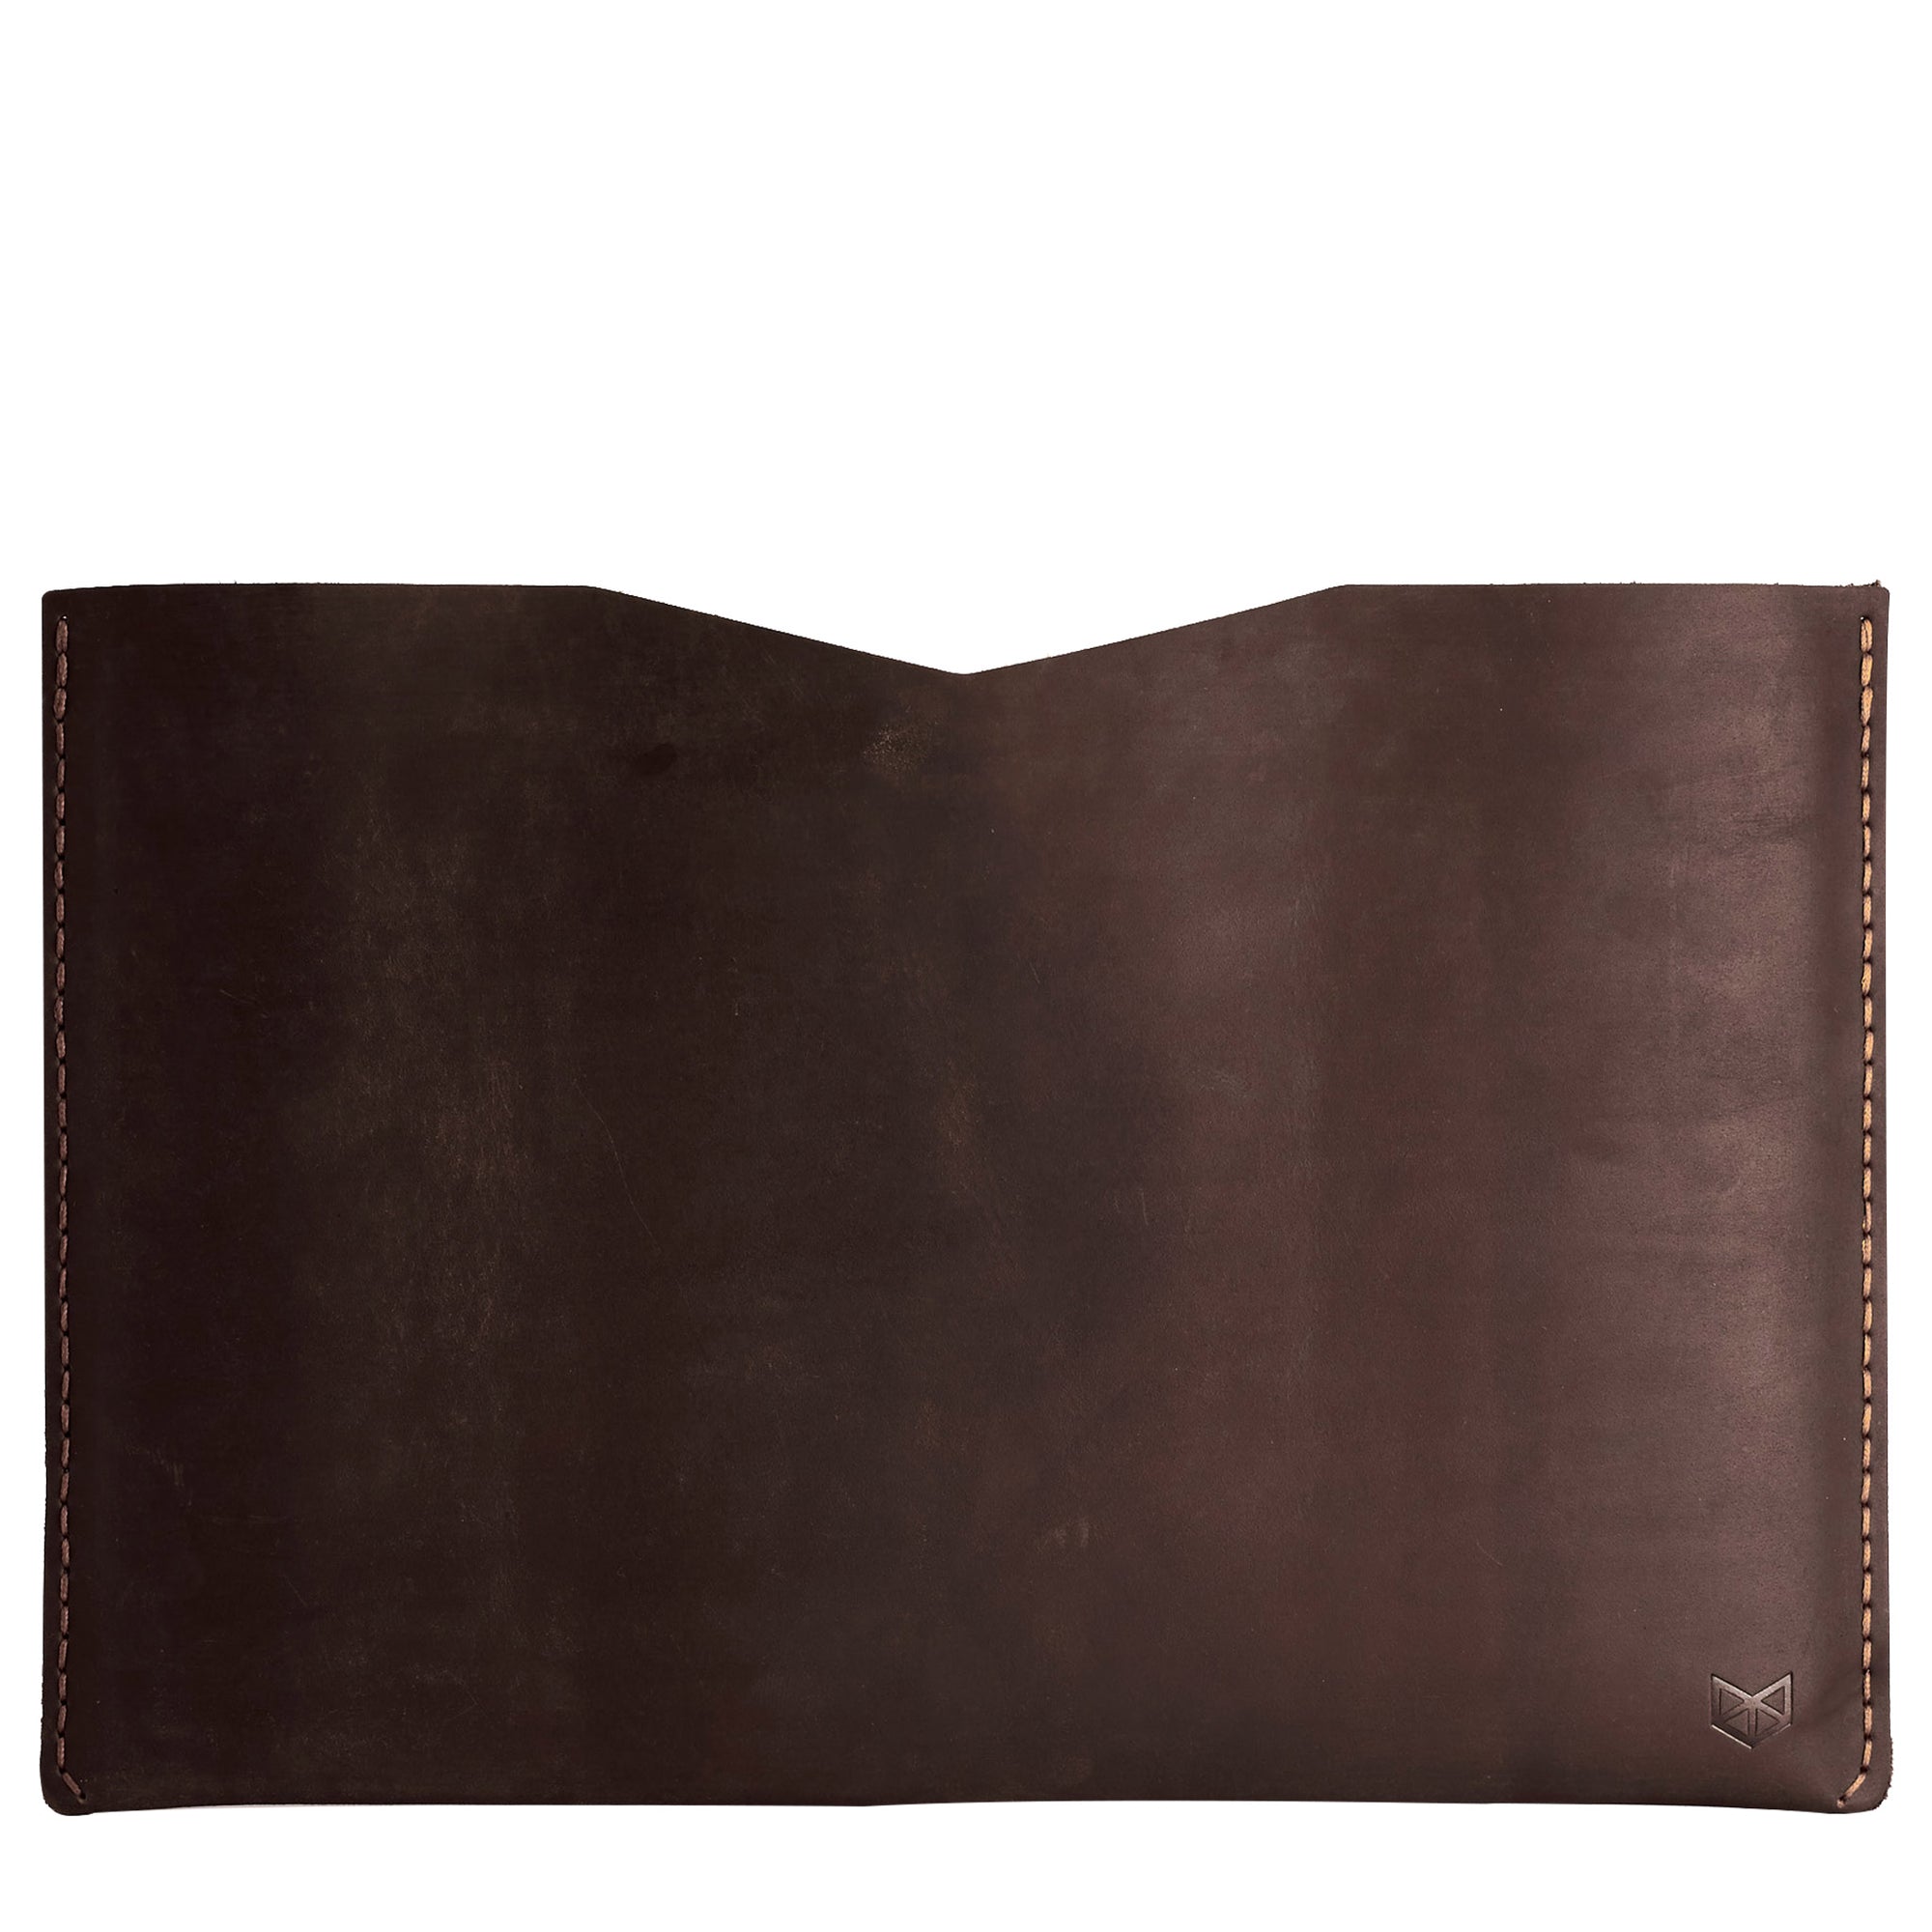 BASIC // MARRON: Leather Lenovo Yoga Thinkpad by Capra Leather